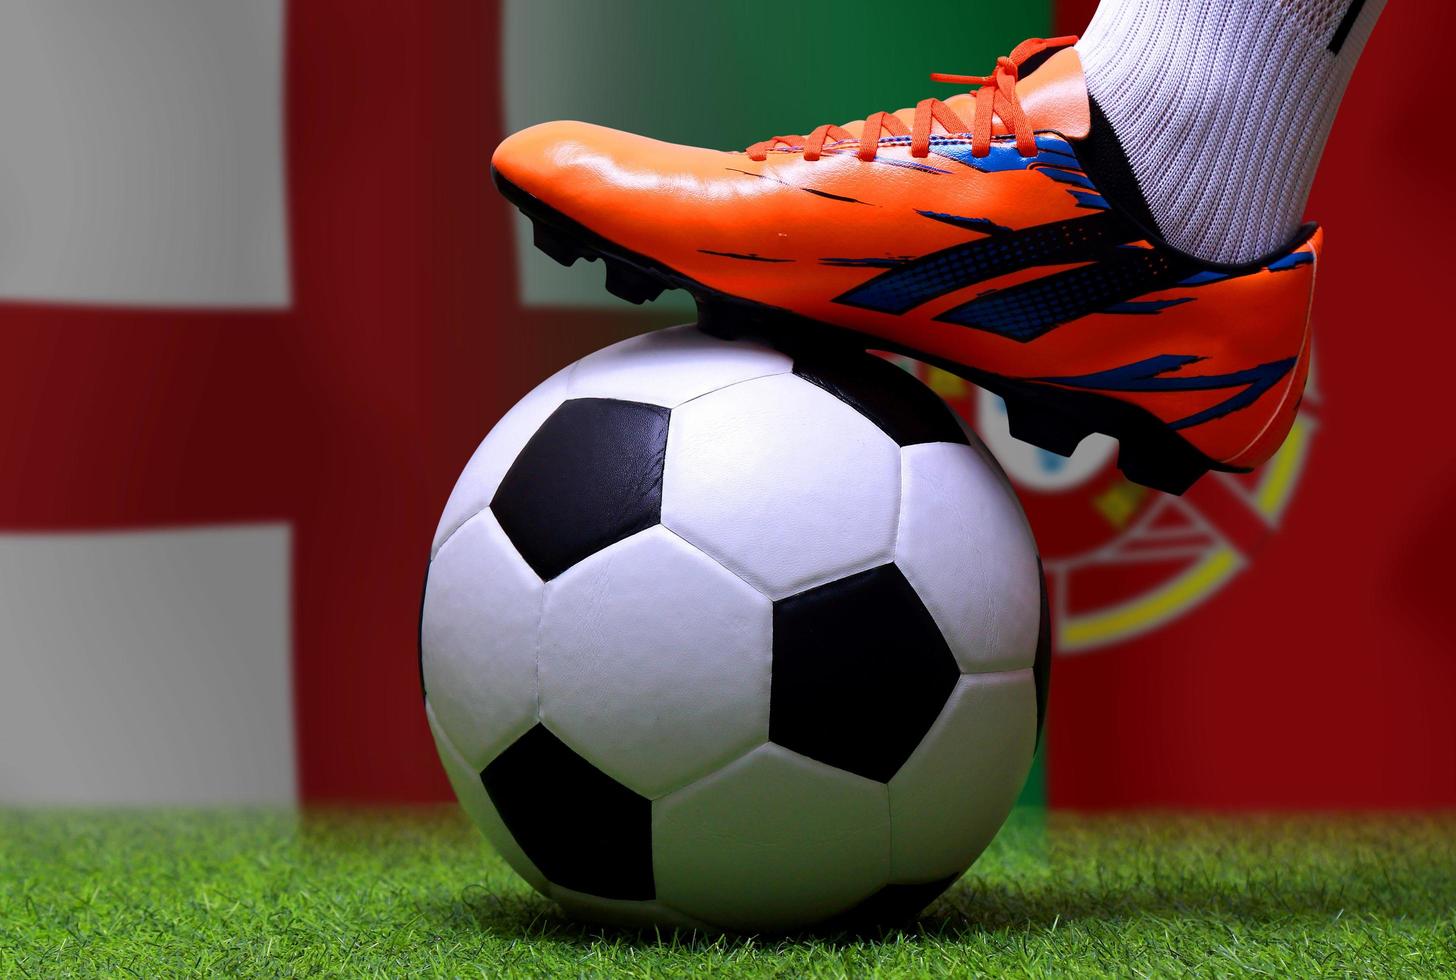 competição de copa de futebol entre a nacional inglaterra e a nacional portuguesa. foto